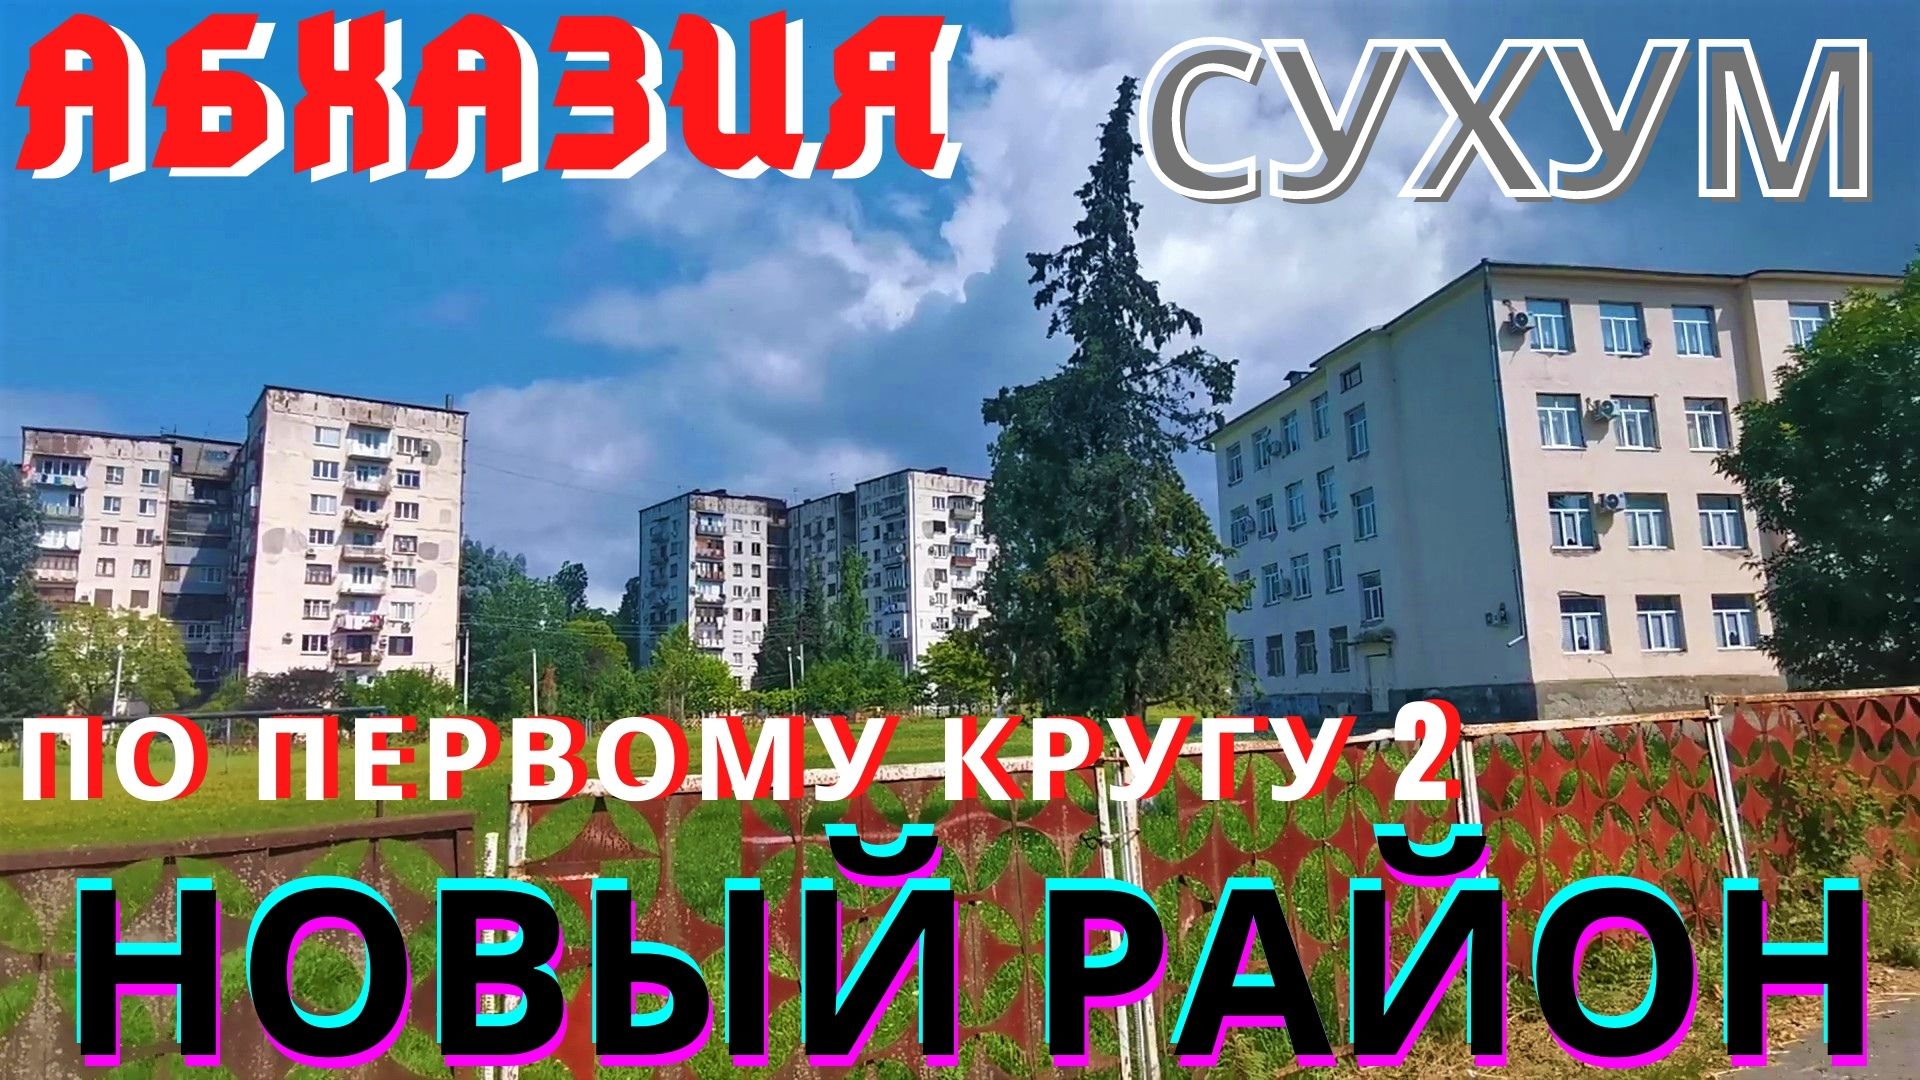 Абхазия 2021, Сухум 2021  Новый район по первому кругу часть 2